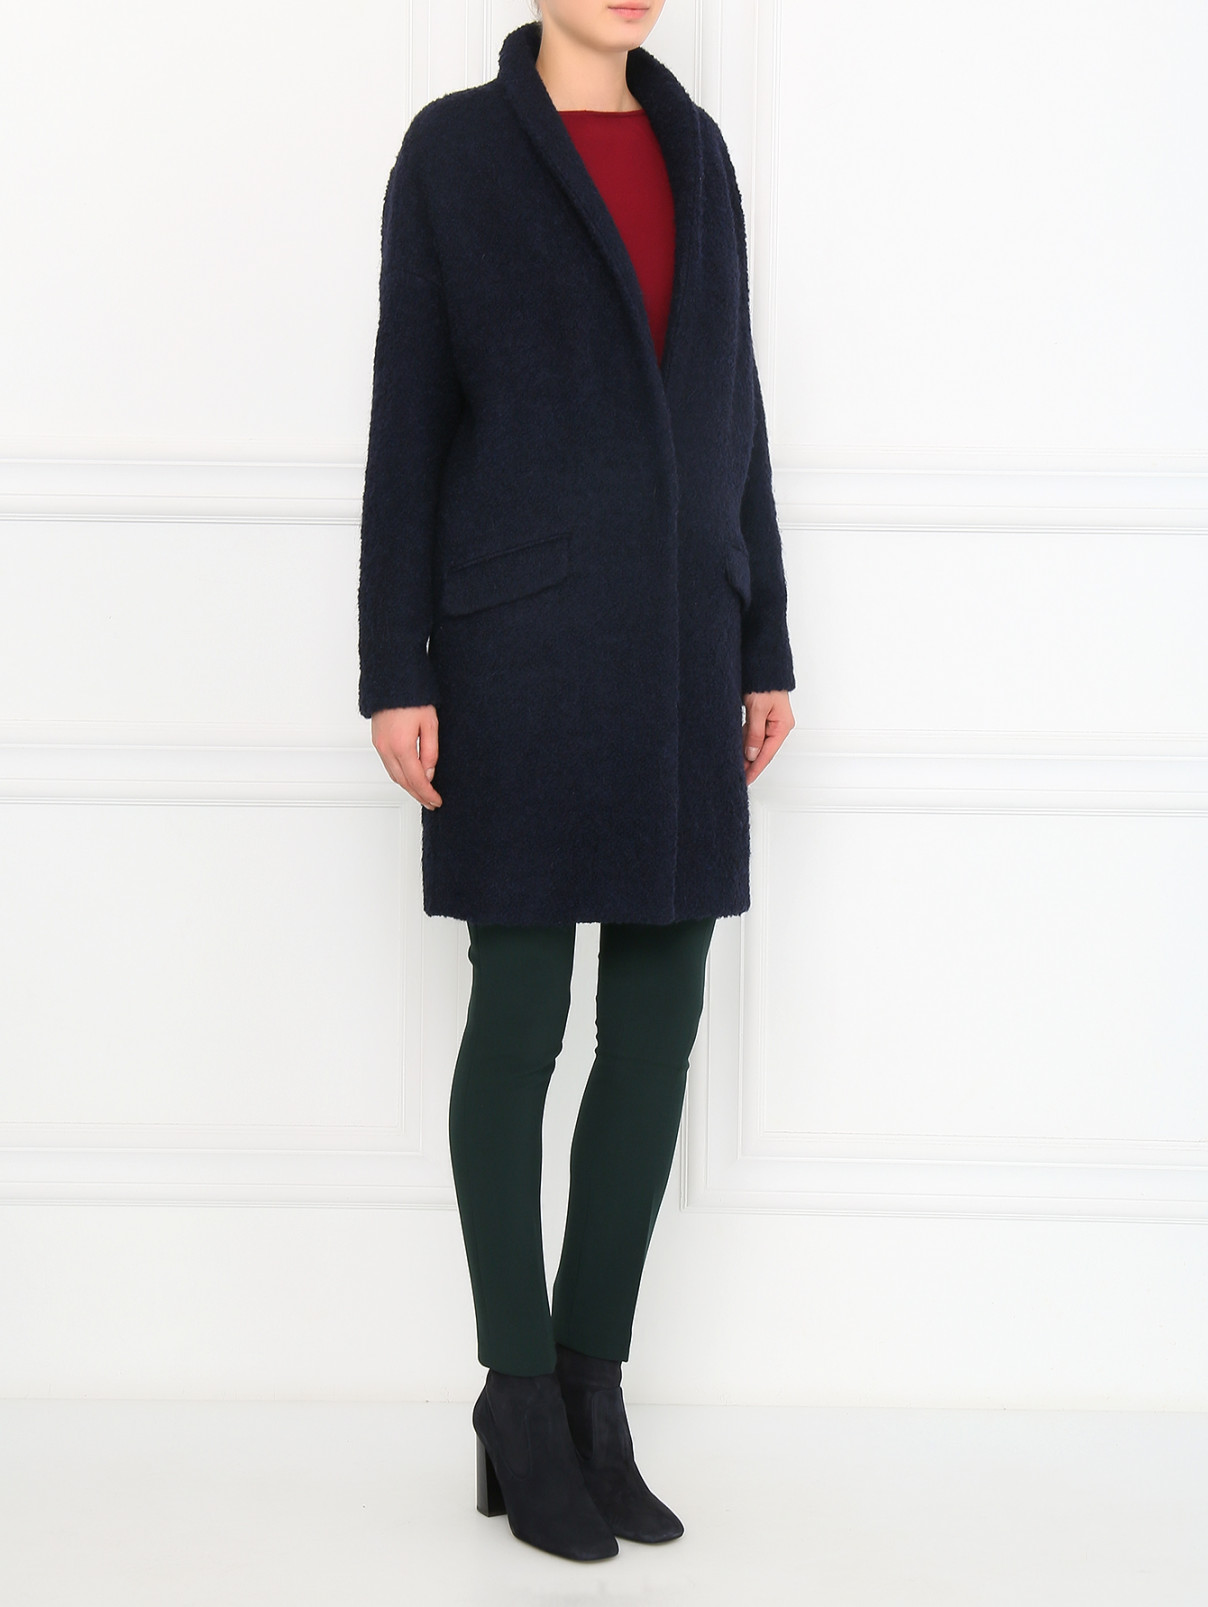 Пальто свободного кроя с накладными карманами Alberto Biani  –  Модель Общий вид  – Цвет:  Синий